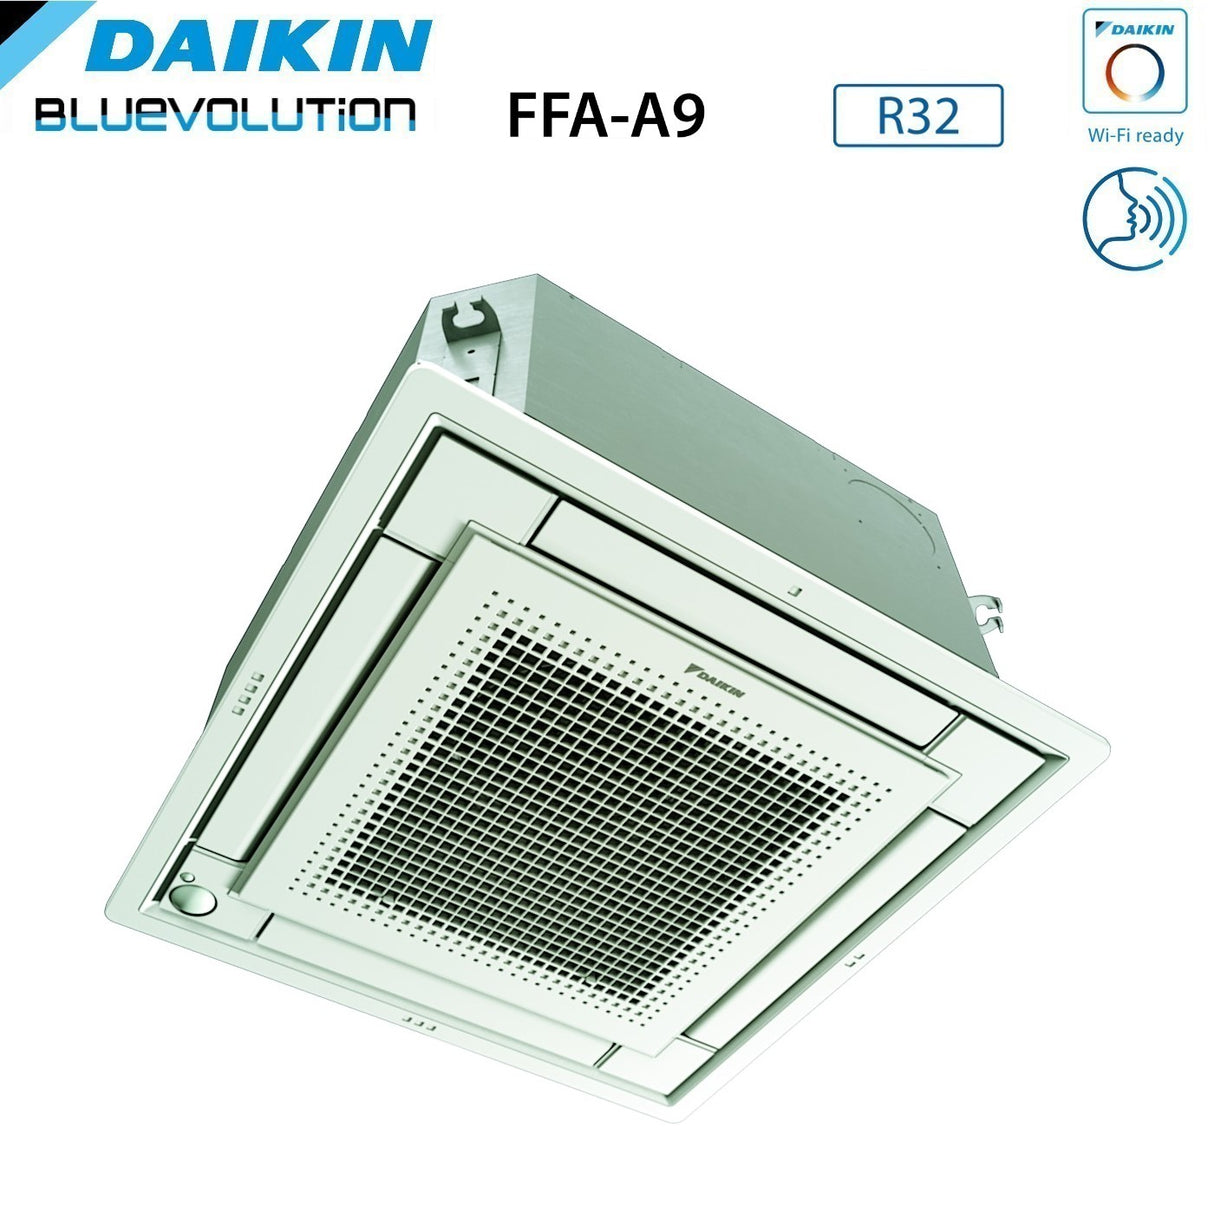 immagine-11-daikin-climatizzatore-condizionatore-daikin-a-cassetta-fully-flat-9000-btu-ffa25a9-r-32-wi-fi-optional-con-griglia-inclusa-classe-aa-garanzia-italiana